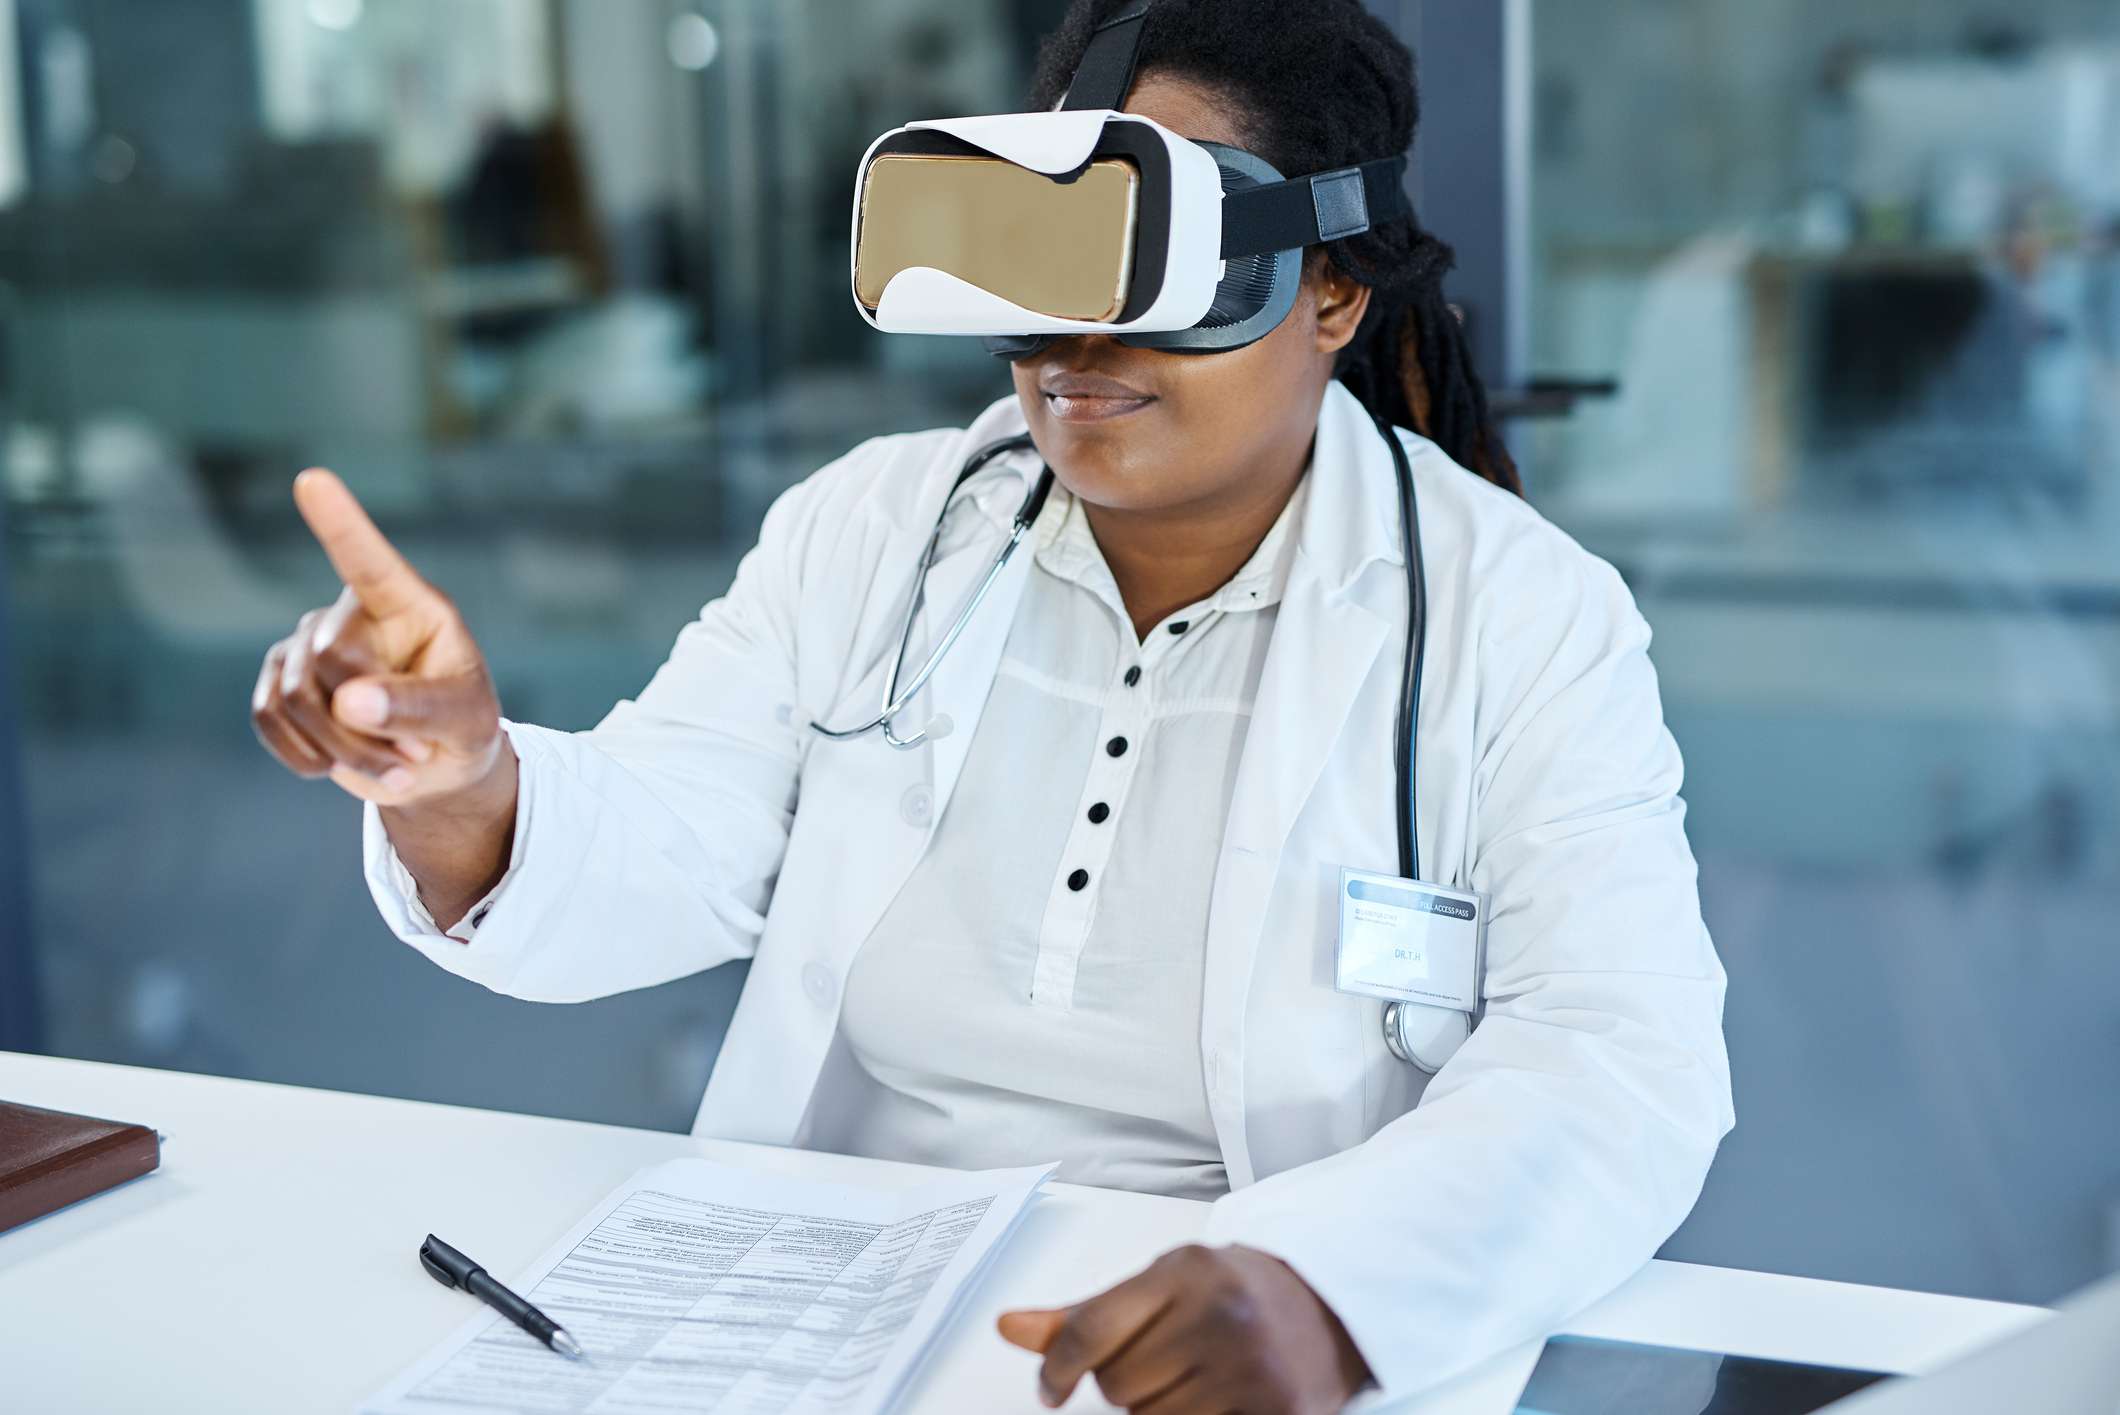 Um estudante de medicina interagindo com um fone de ouvido VR.